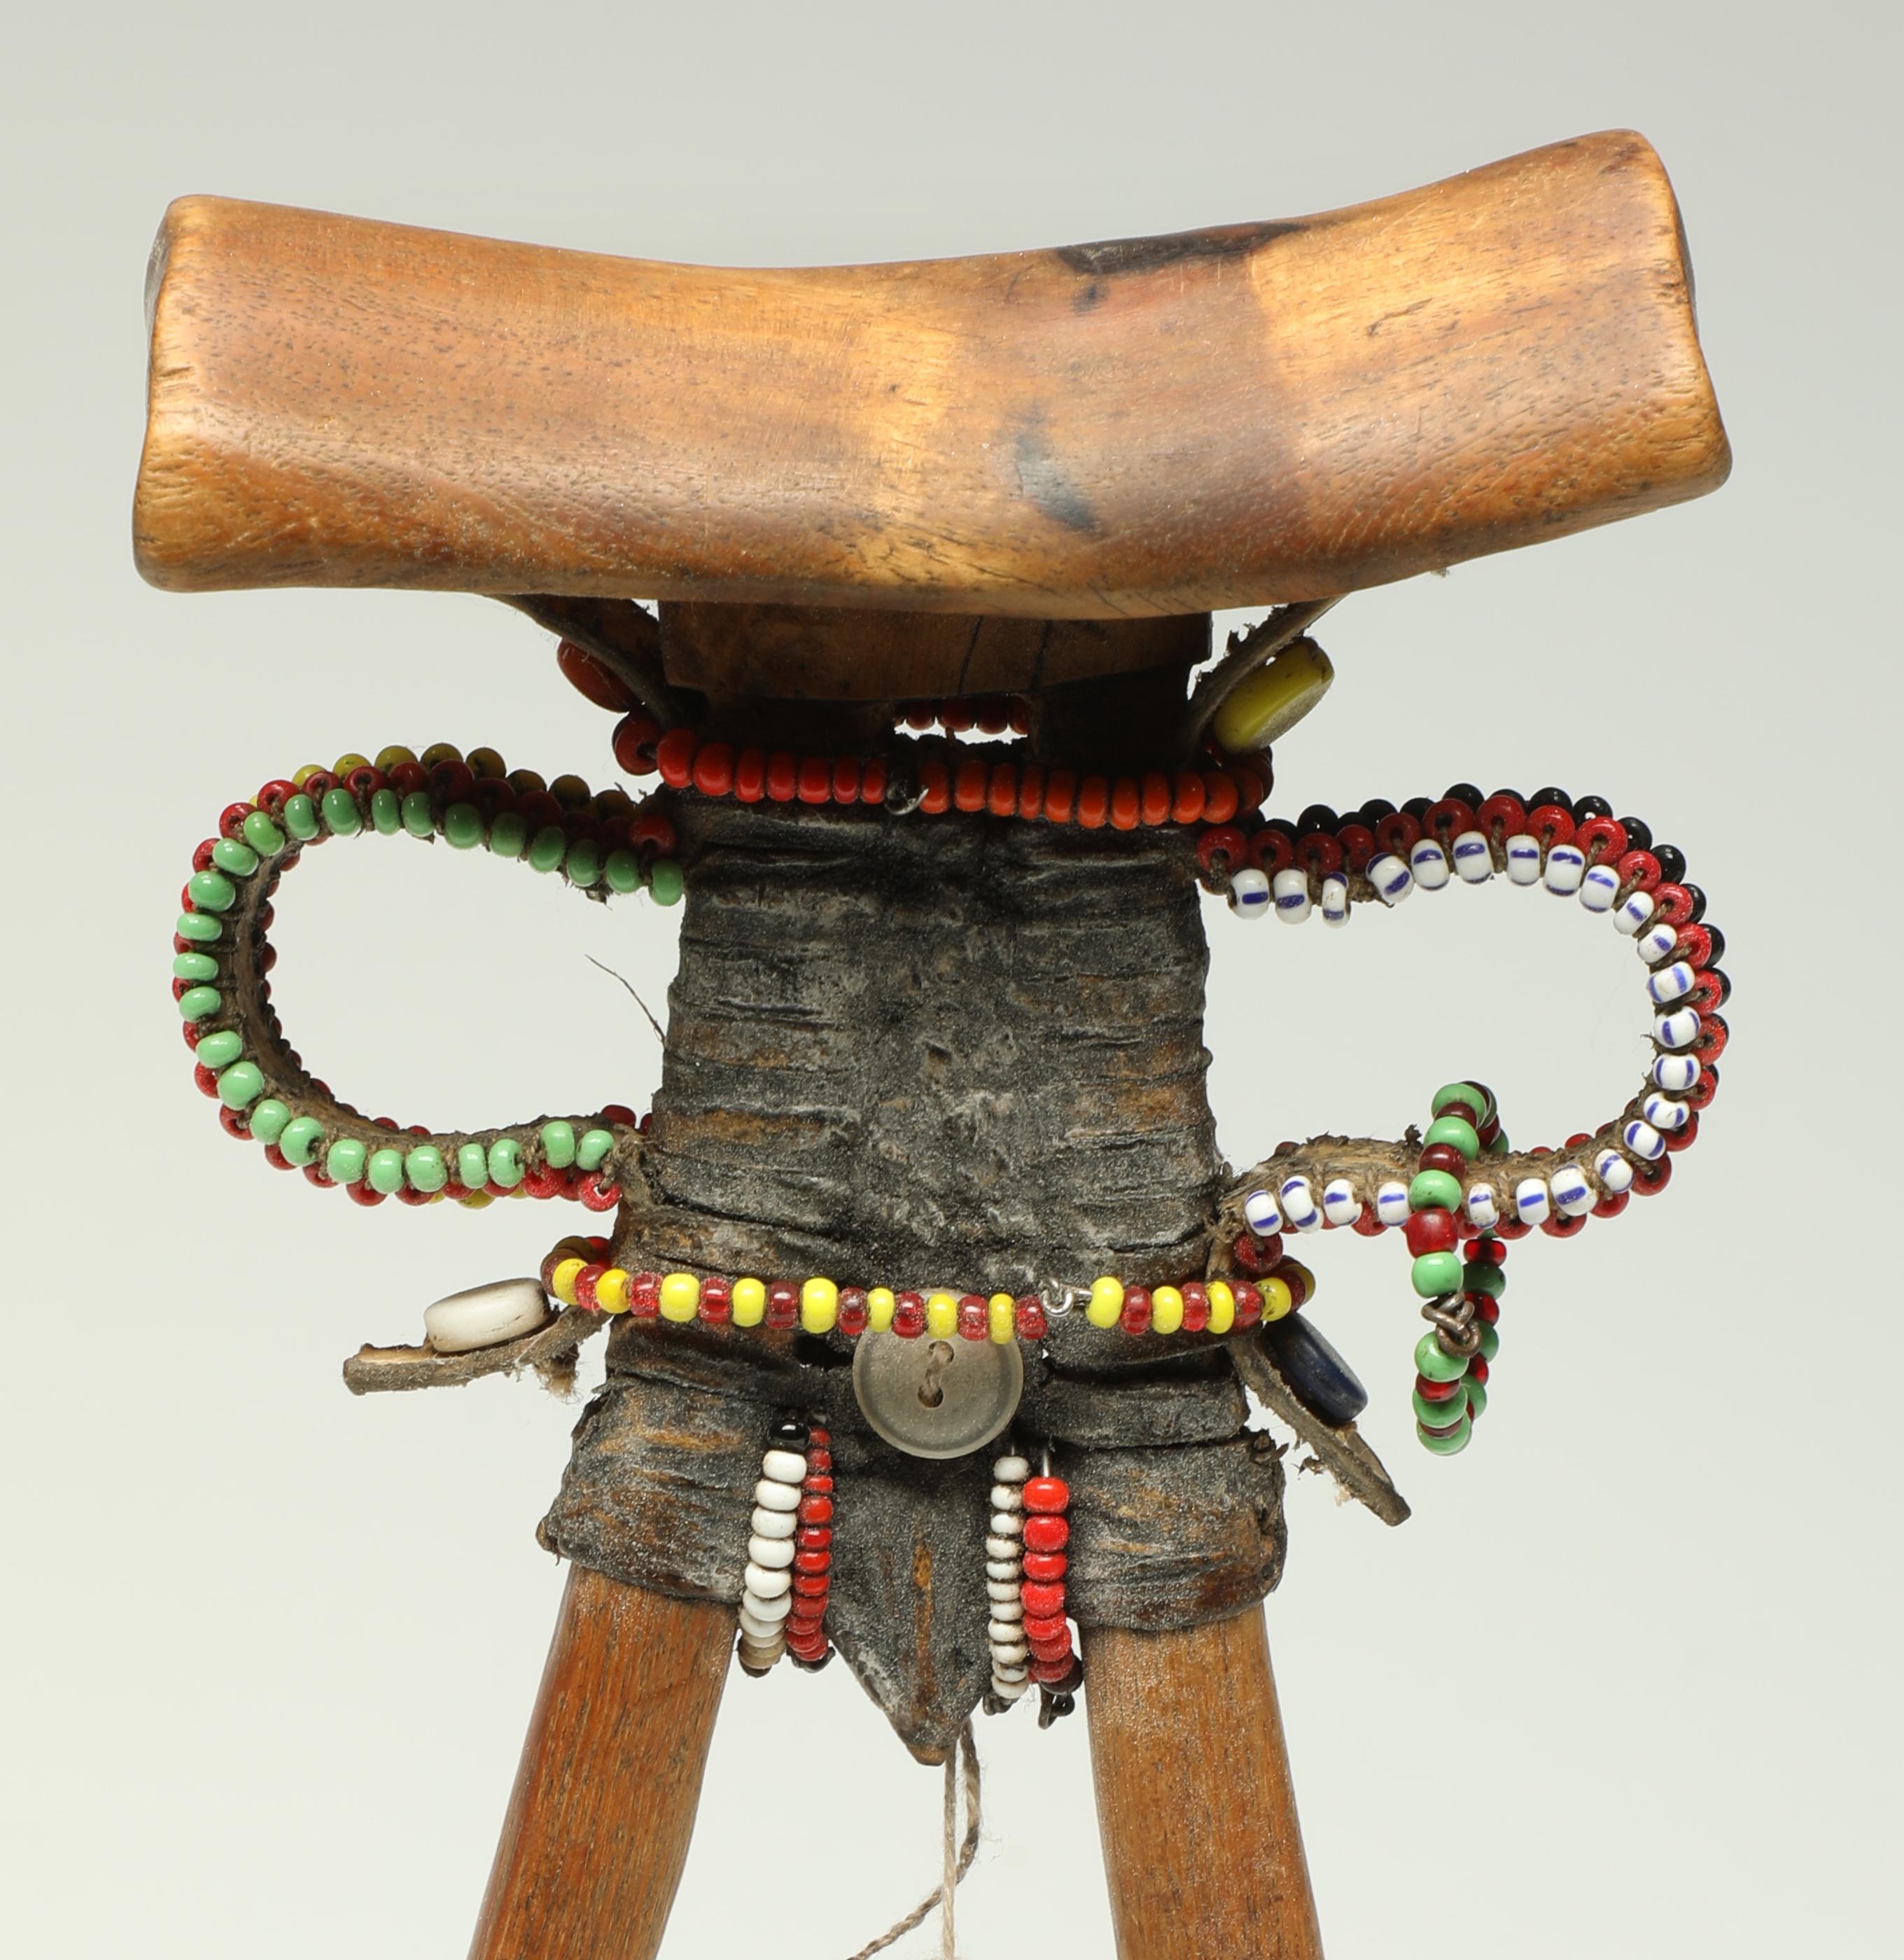 Kopfstütze aus geschnitztem Holz des Turkana-Stammes, stilisierte menschliche Form, Anfang 20. Jahrhundert, Kenia, Afrika.

Kopfstütze aus Kenia mit aufgesetztem Leder, Perlen, Knöpfen und einem Fingermesser aus Metall. Tolle Skulptur aus allen